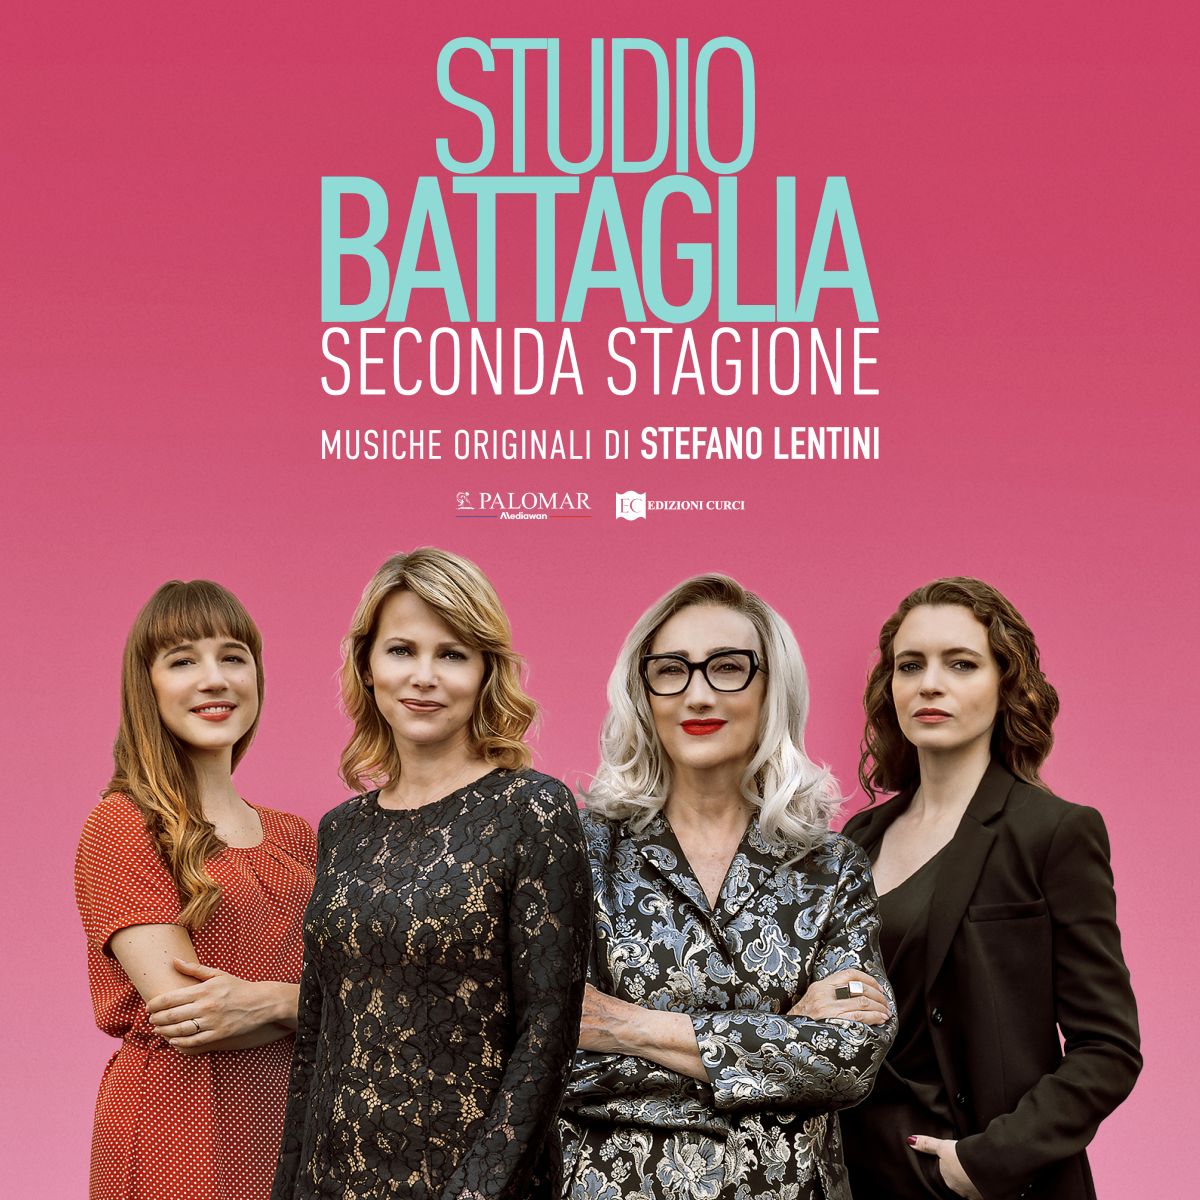 online il making of della colonna sonora originale, della serie tv “Studio Battaglia”